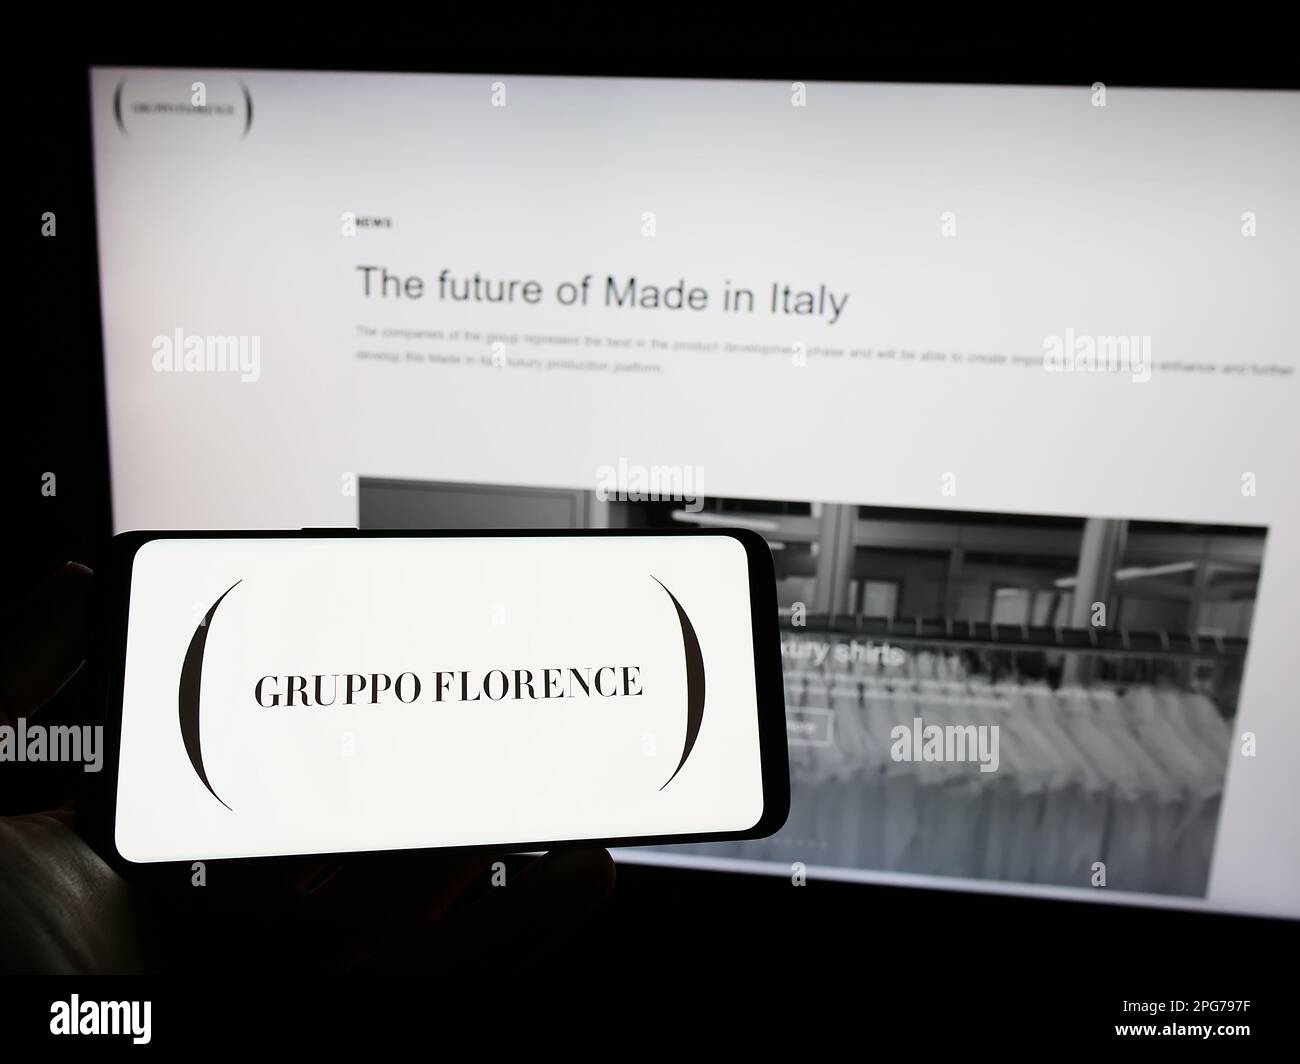 Personne tenant un téléphone portable avec le logo de la société italienne de mode Gruppo Florence S.p.A. à l'écran en face de la page web. Mise au point sur l'affichage du téléphone. Banque D'Images